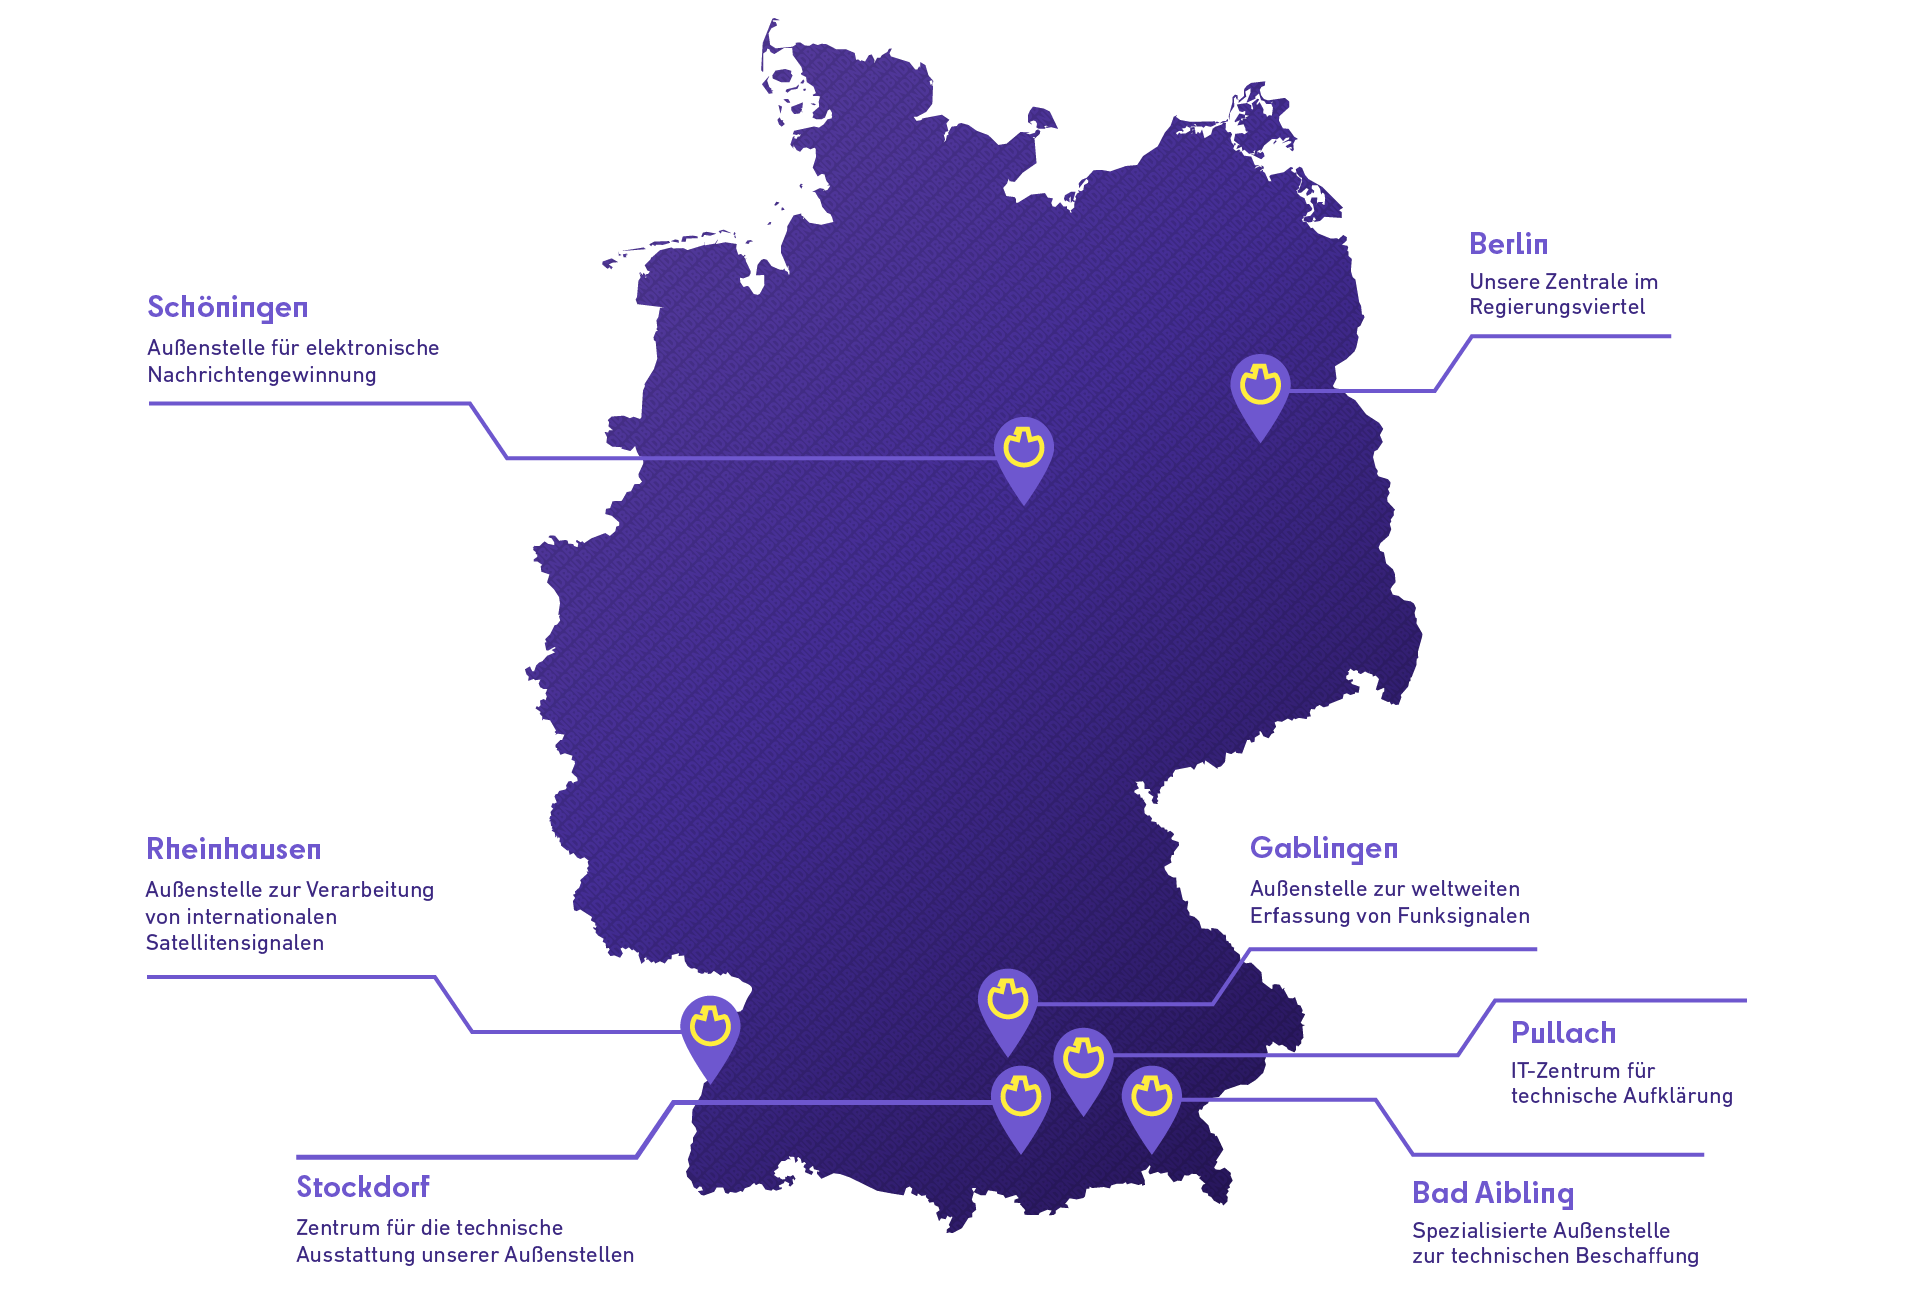 Deutschlandkarte, auf der die Standorte des BND eingezeichnet sind